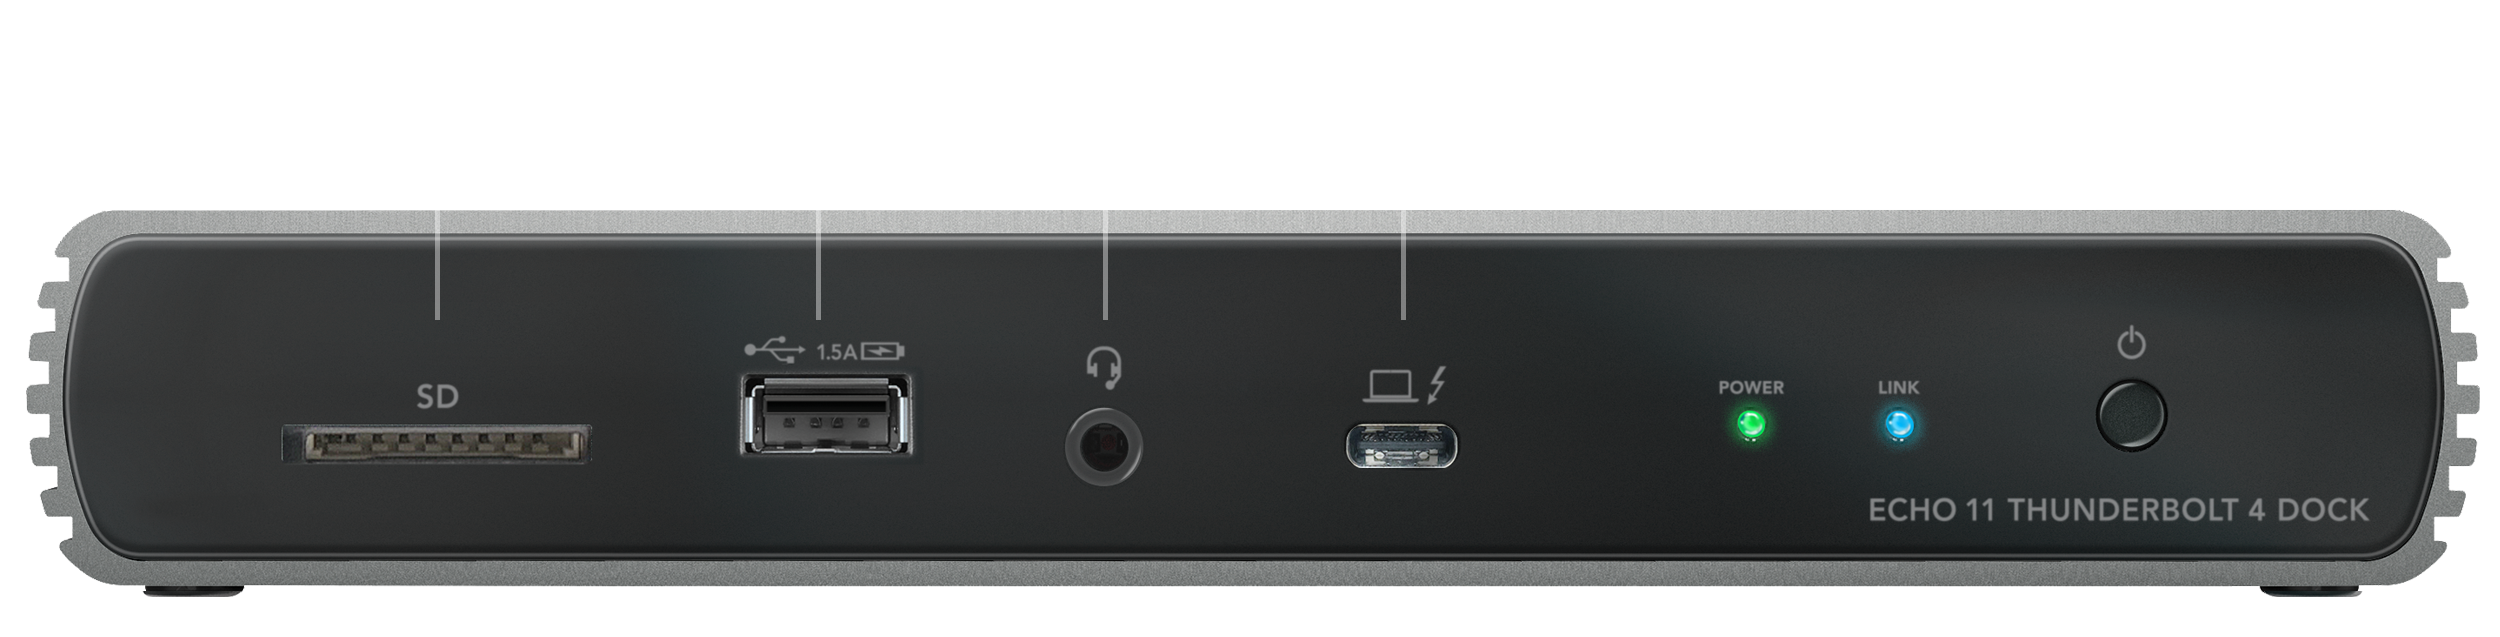 Echo 11 Thunderbolt 4 Dock - SONNETTECH